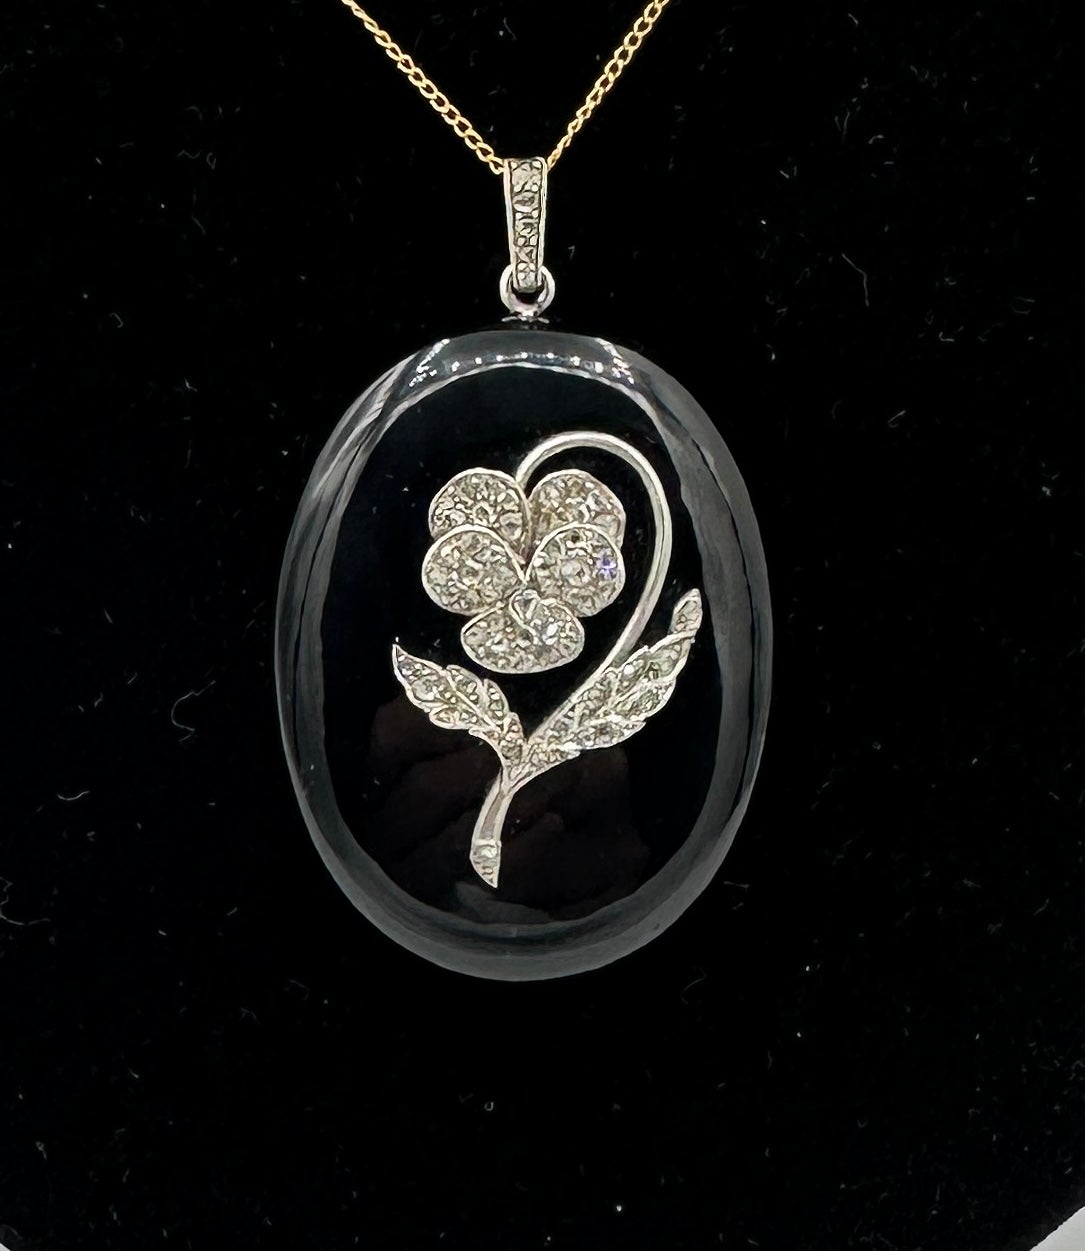 Dies ist eine prächtige viktorianischen bis Art Deco Antike Rose Cut Diamond Platinum Medaillon Anhänger mit einem exquisiten Diamant gesetzt Stiefmütterchen Blume auf dem geschnitzten schwarzen Onyx und Platin Medaillon.   Das Bildmedaillon ist